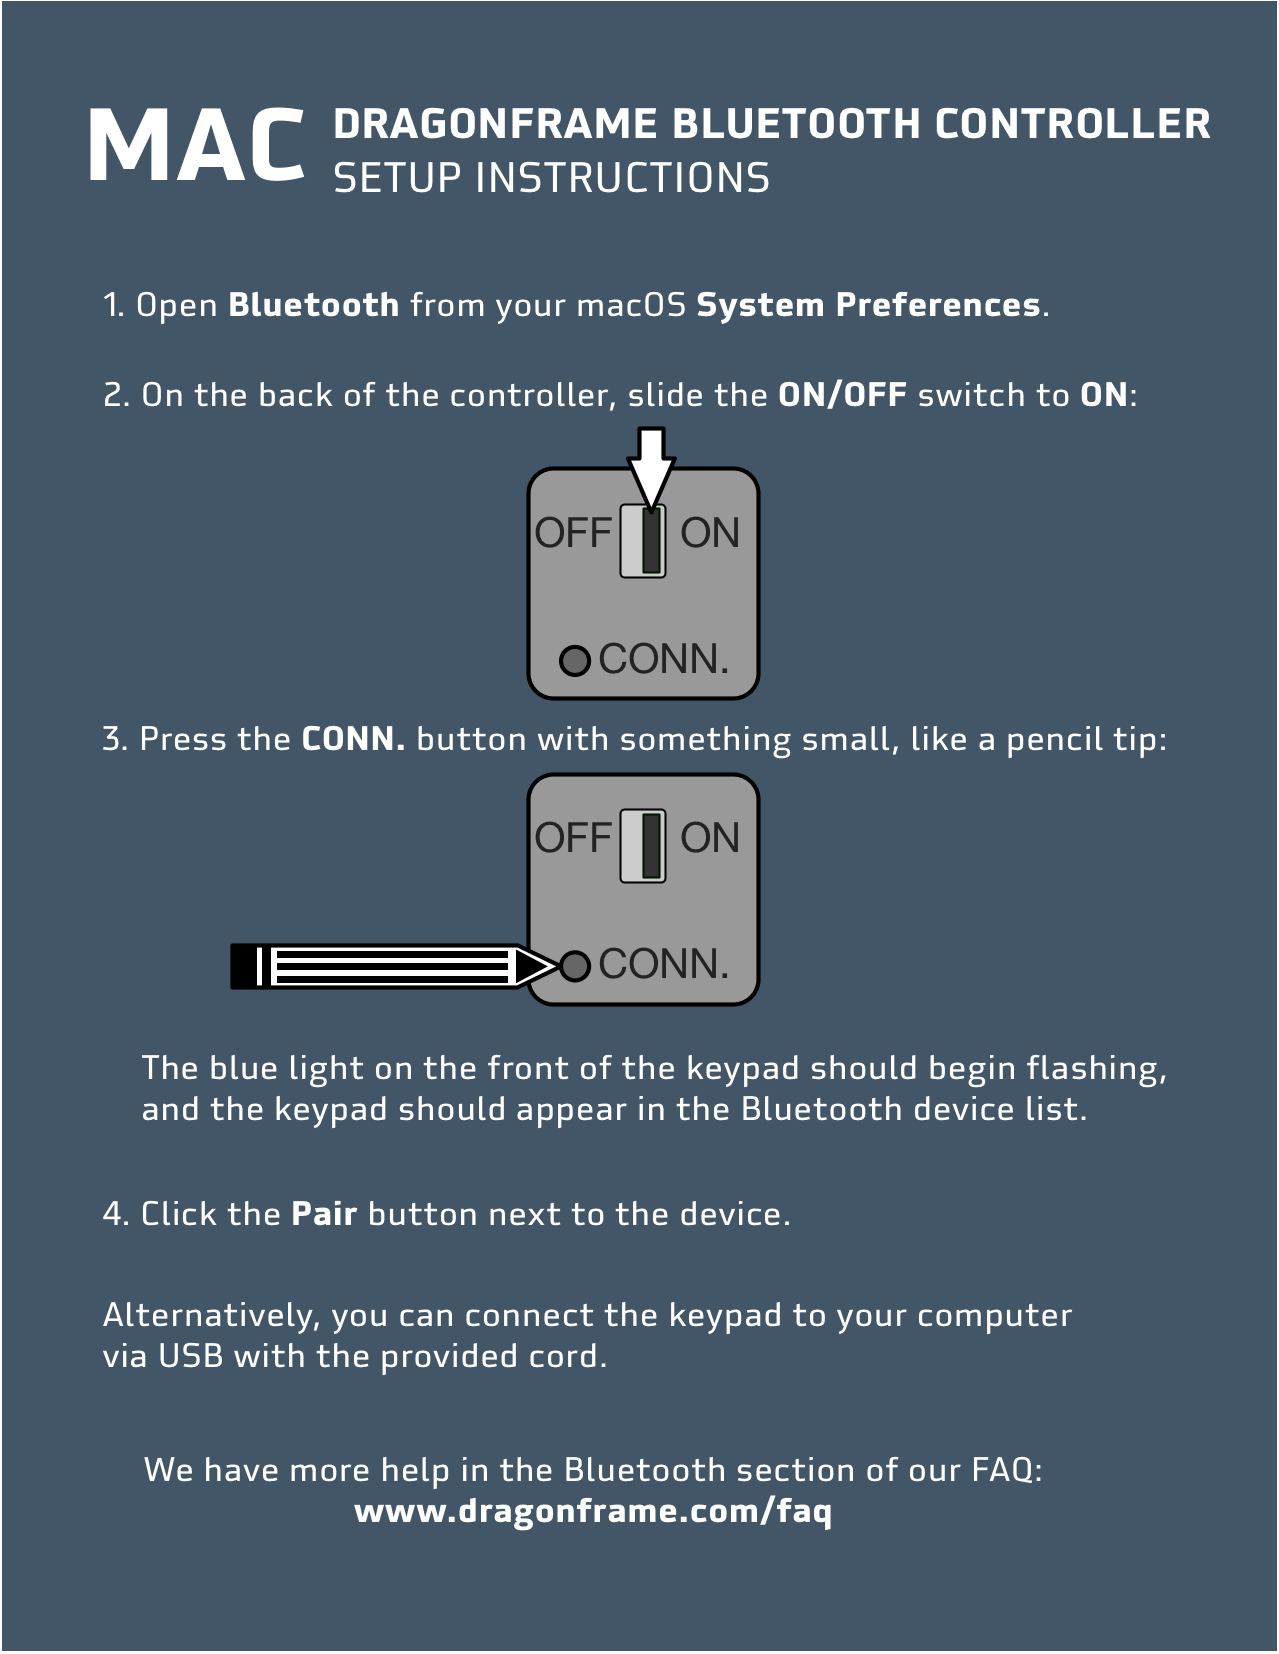 Mac BT Controller Setup Guide